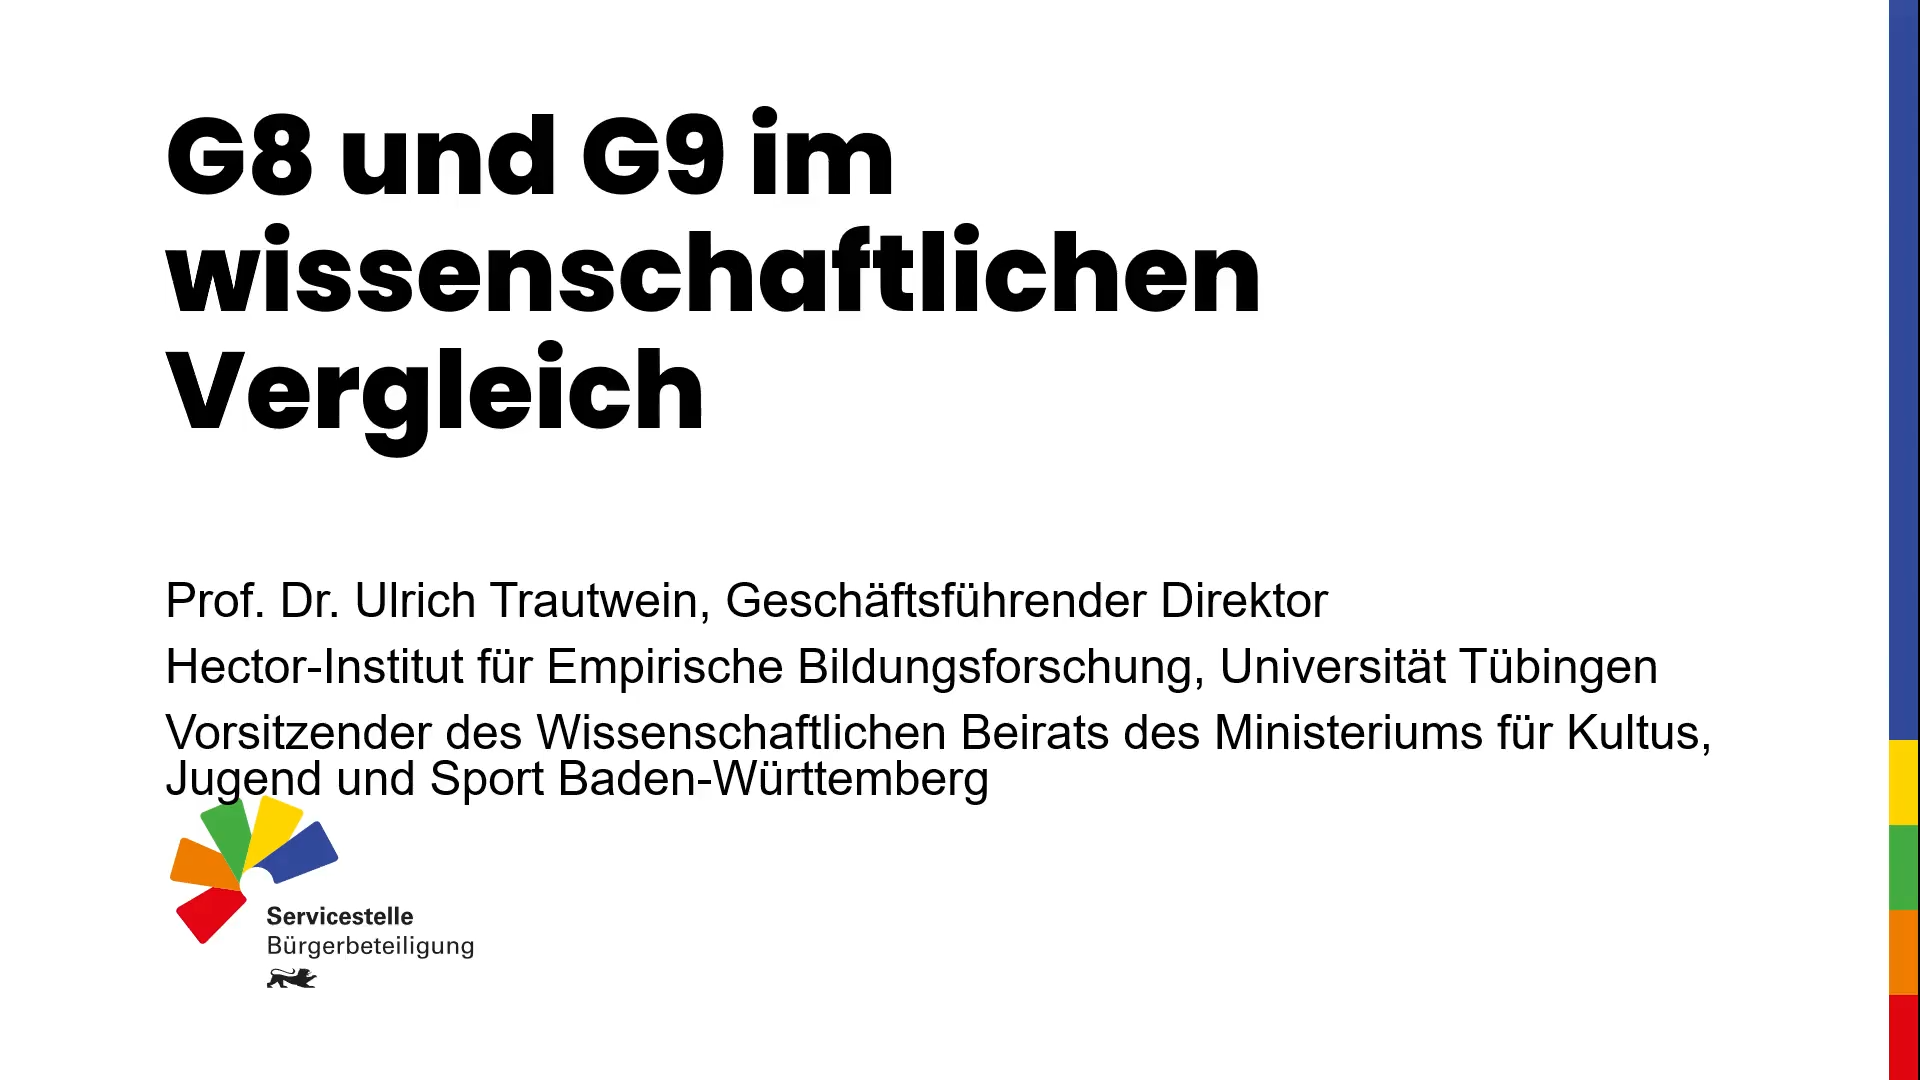 Vortrag von Prof. Dr. Ulrich Trautwein bei der zweiten Sitzung des Bürgerforums G8/G9